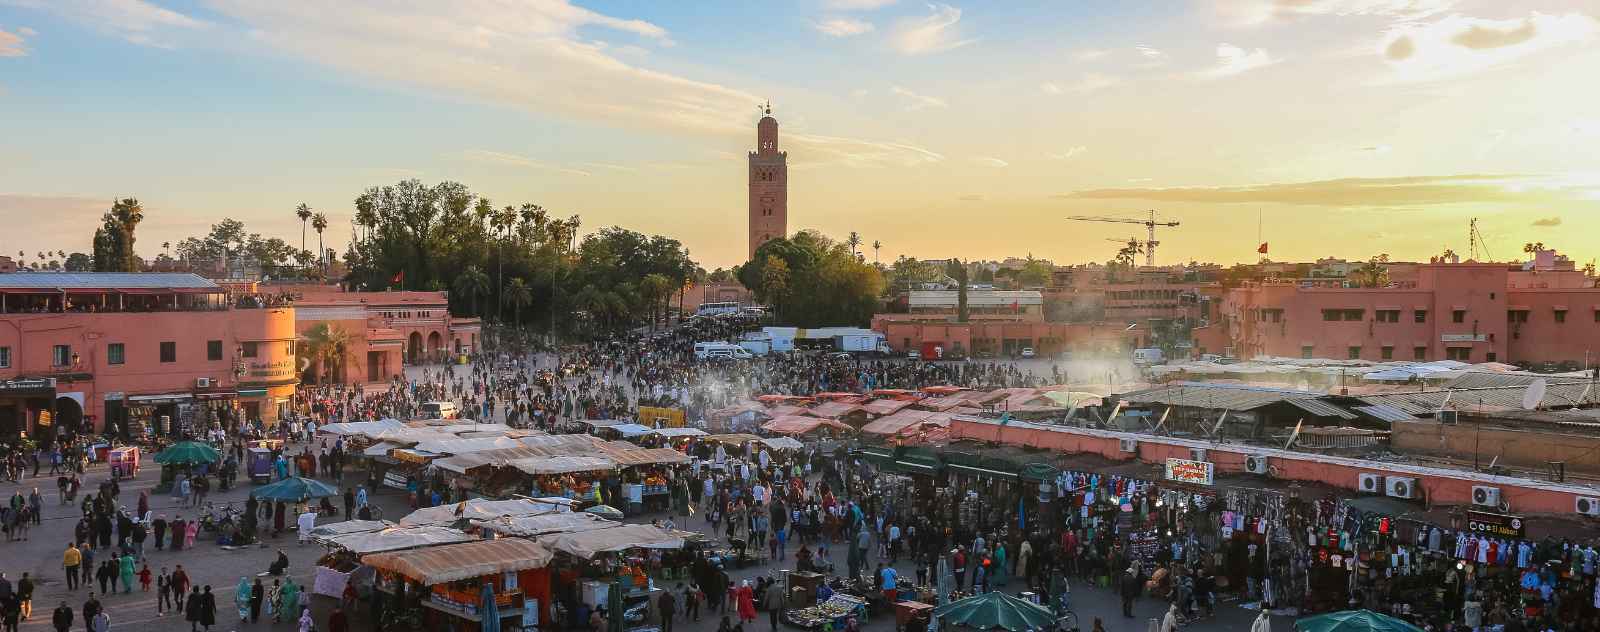 Morocco Marrakech